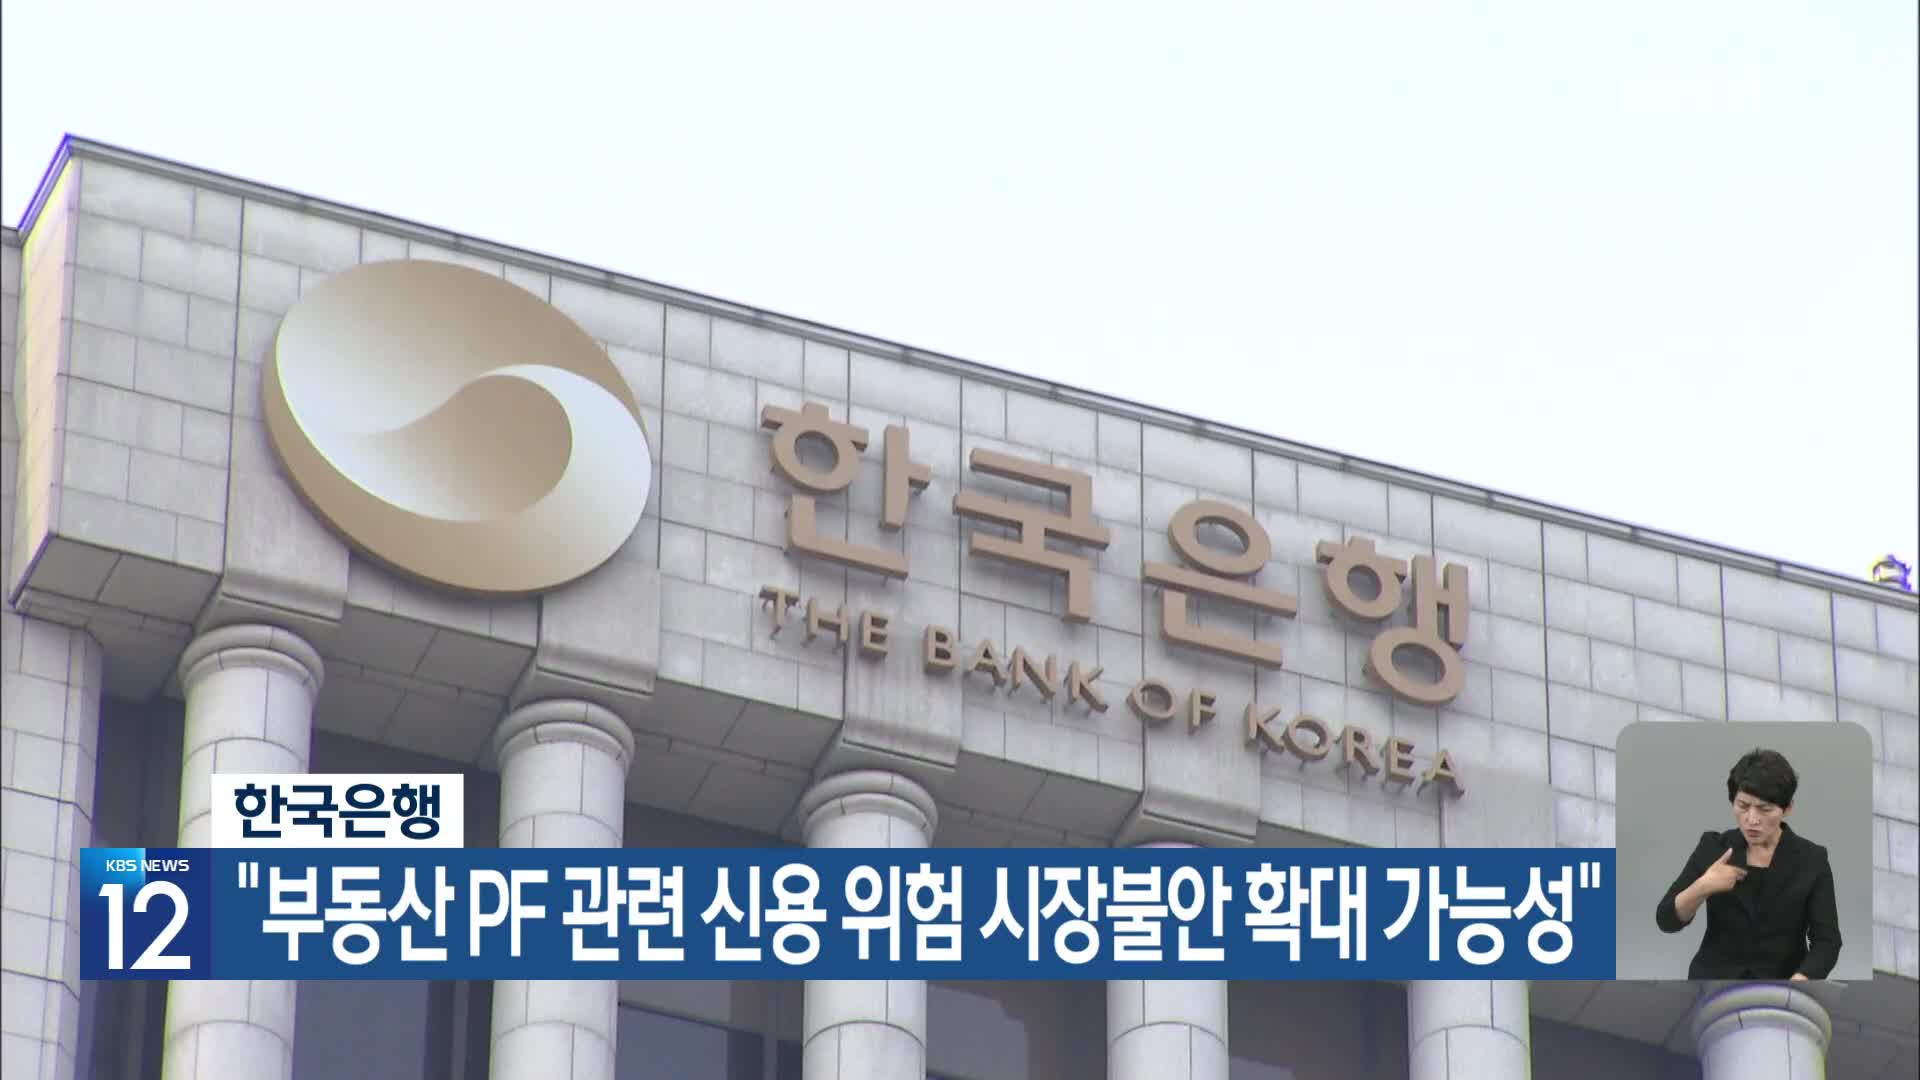 한국은행 “부동산 PF 관련 신용 위험 시장불안 확대 가능성”